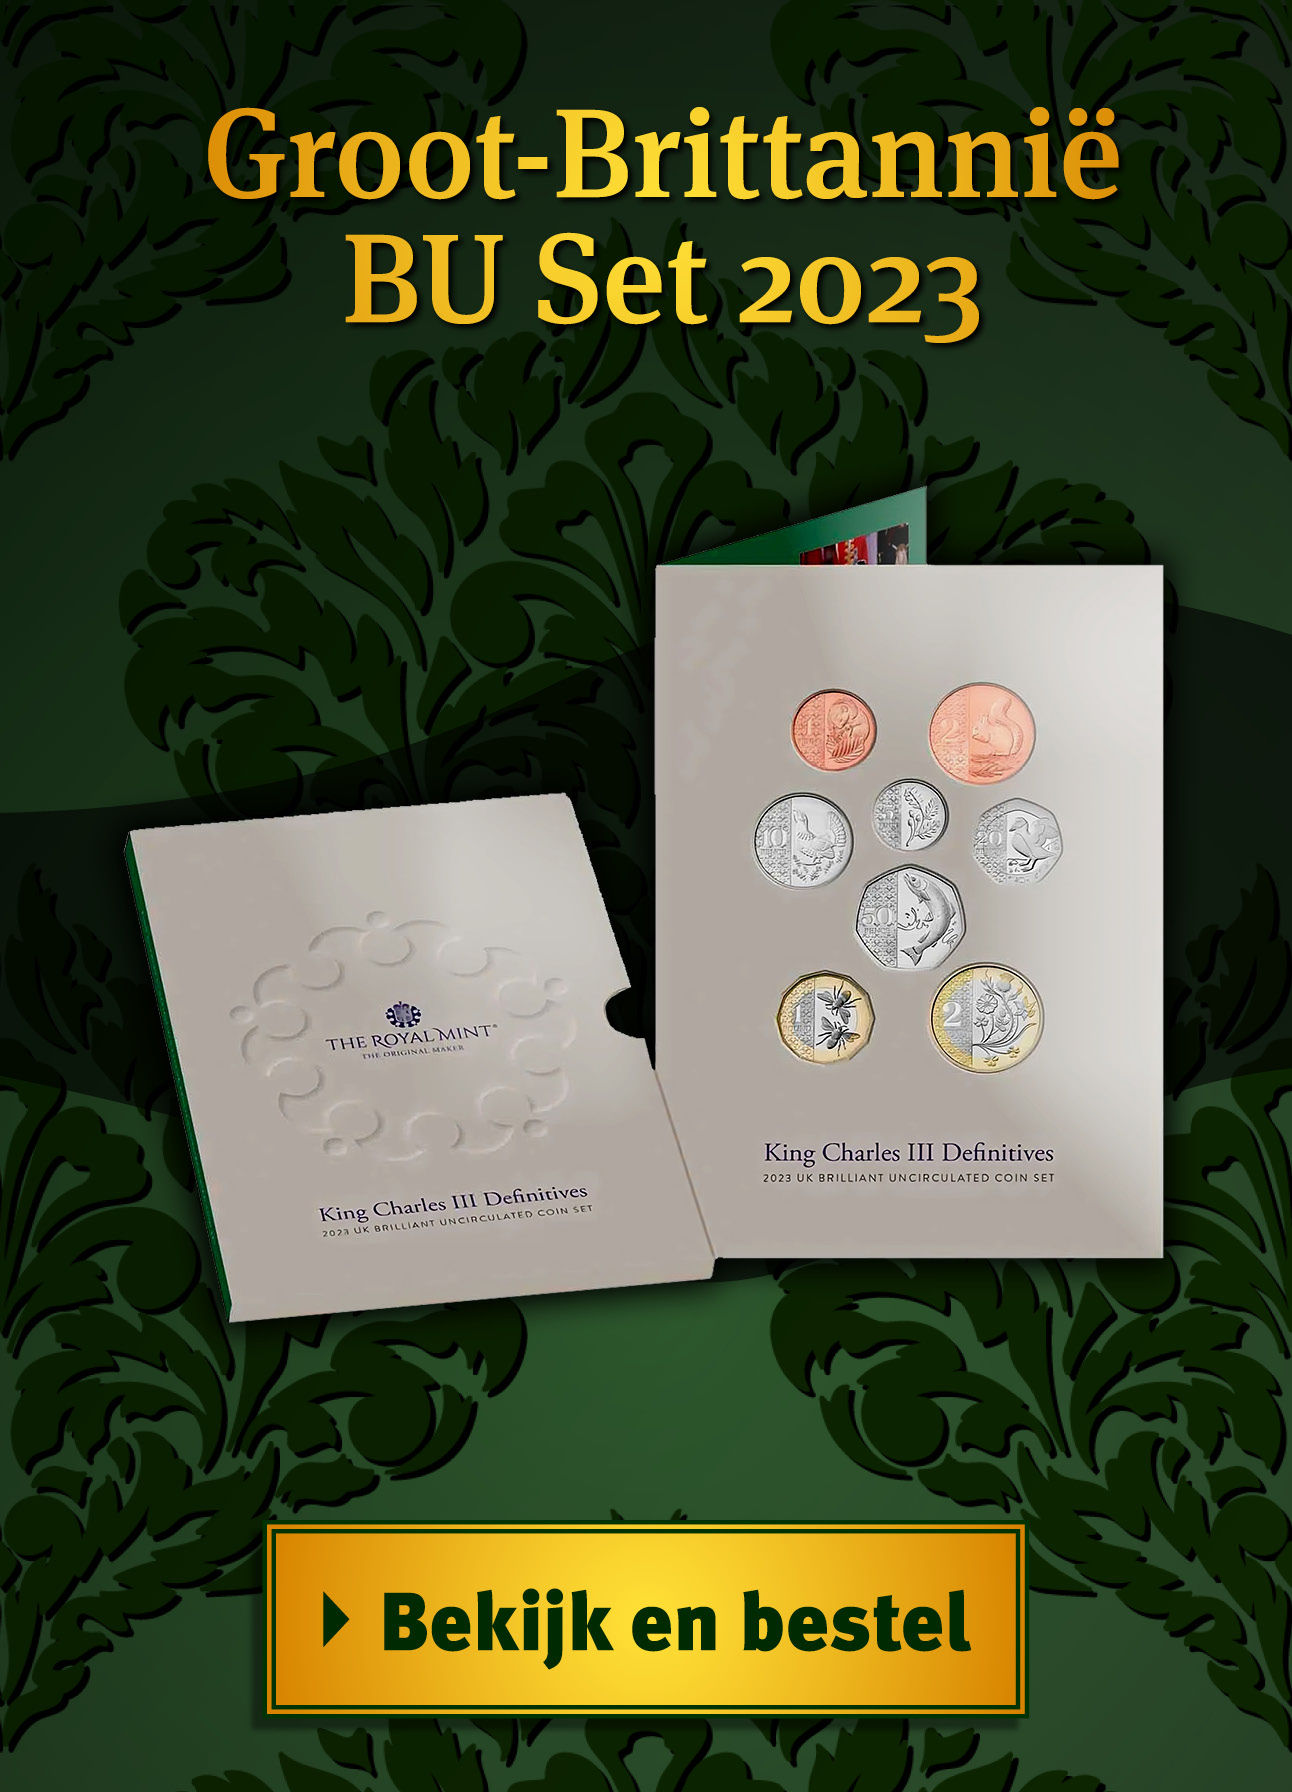 Bekijk en bestel: UK Brilliant Uncirculated Coin Set 2023